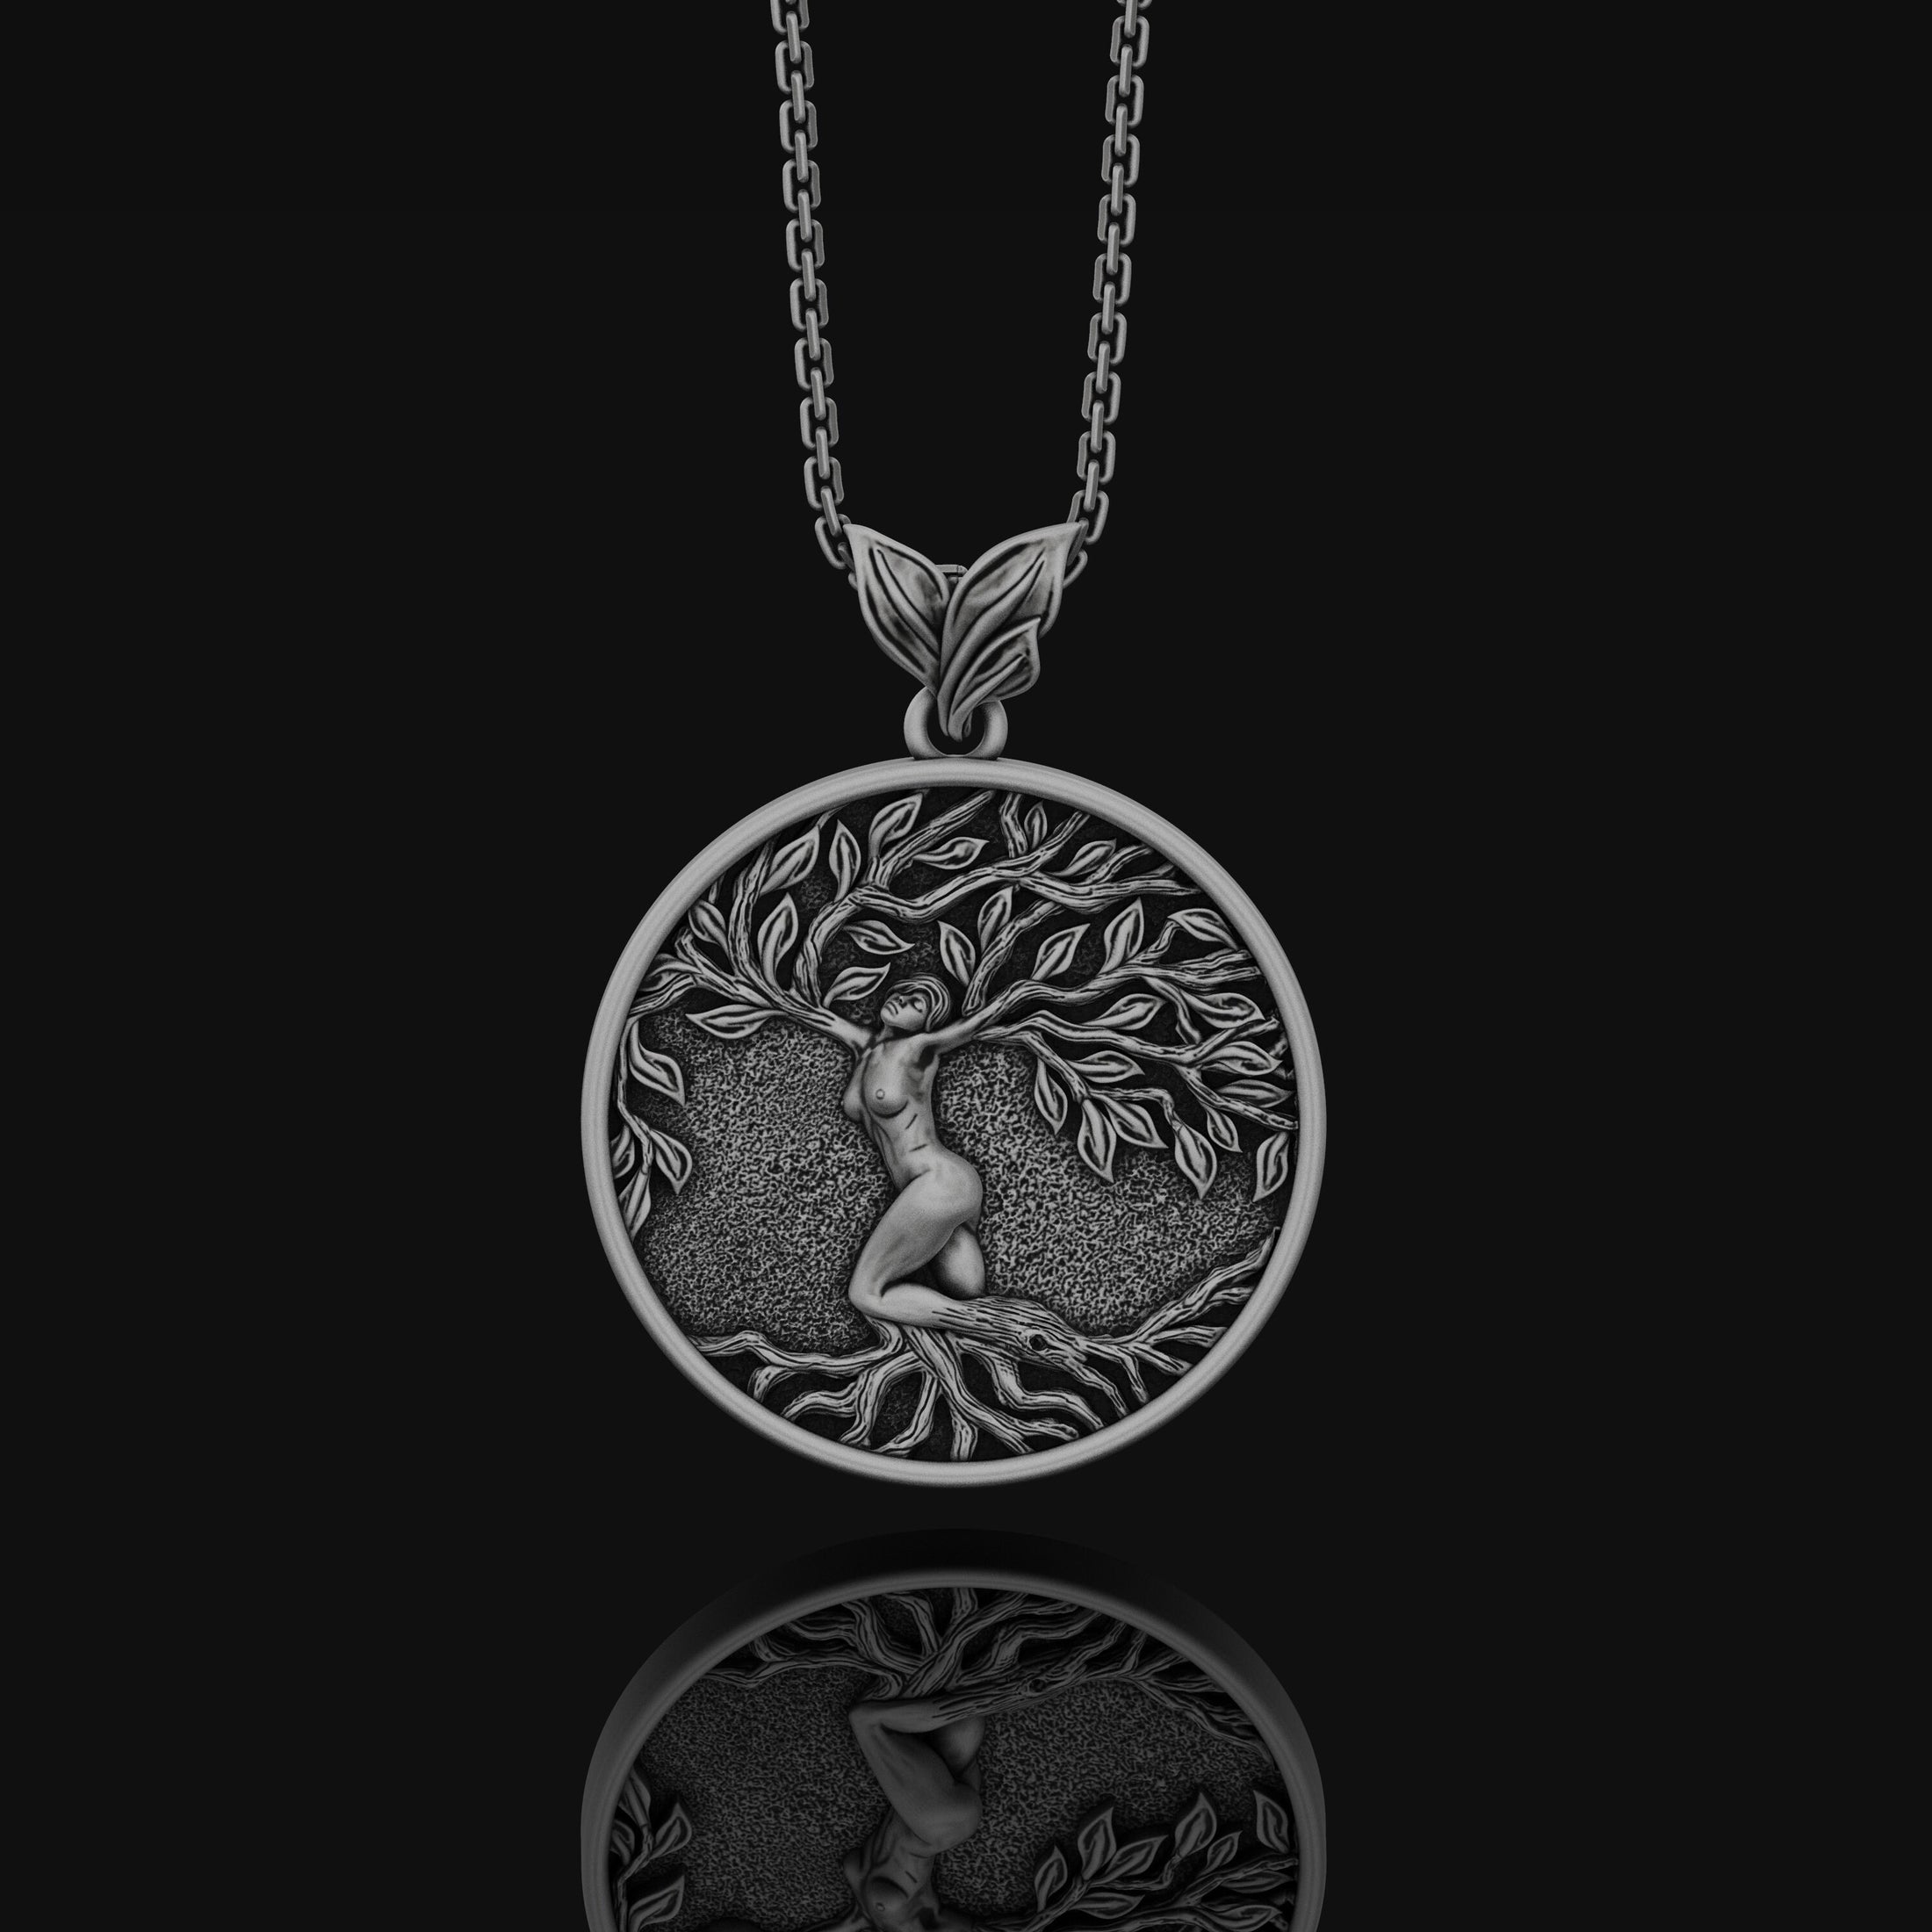 Yggdrasil Tree Of Life Pendant, Norse Mythology Gift, Vikings Asgard, Norse Mythology, Norse Pagan Necklace, Celtic World Tree Oxidized Finish